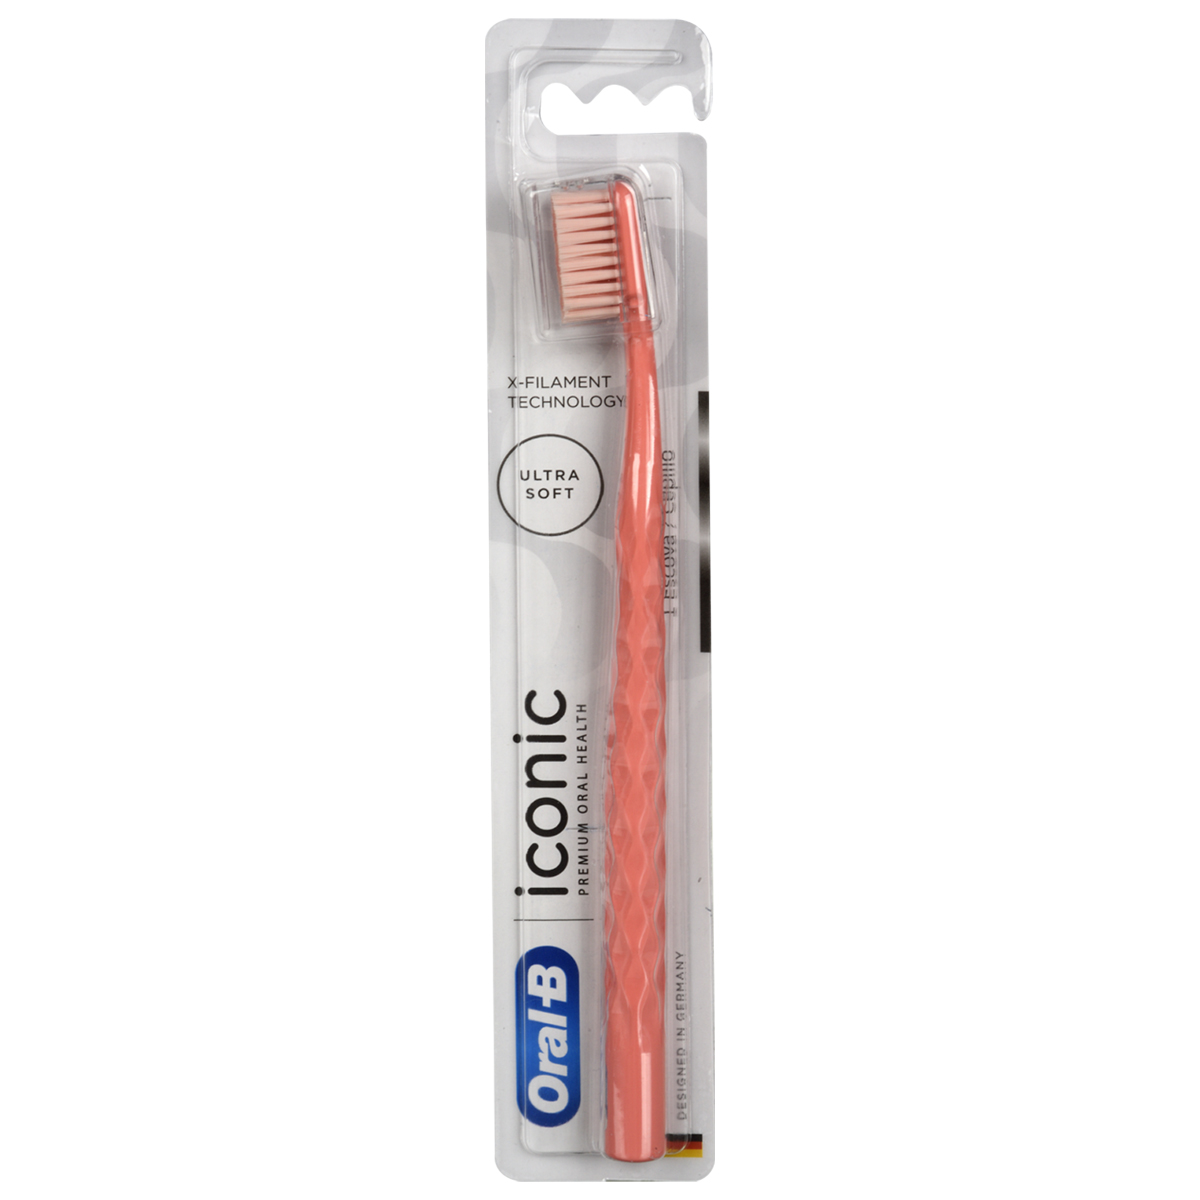 Cepillo Dental Oral-B Iconic Premium 1 Unidad, Productos